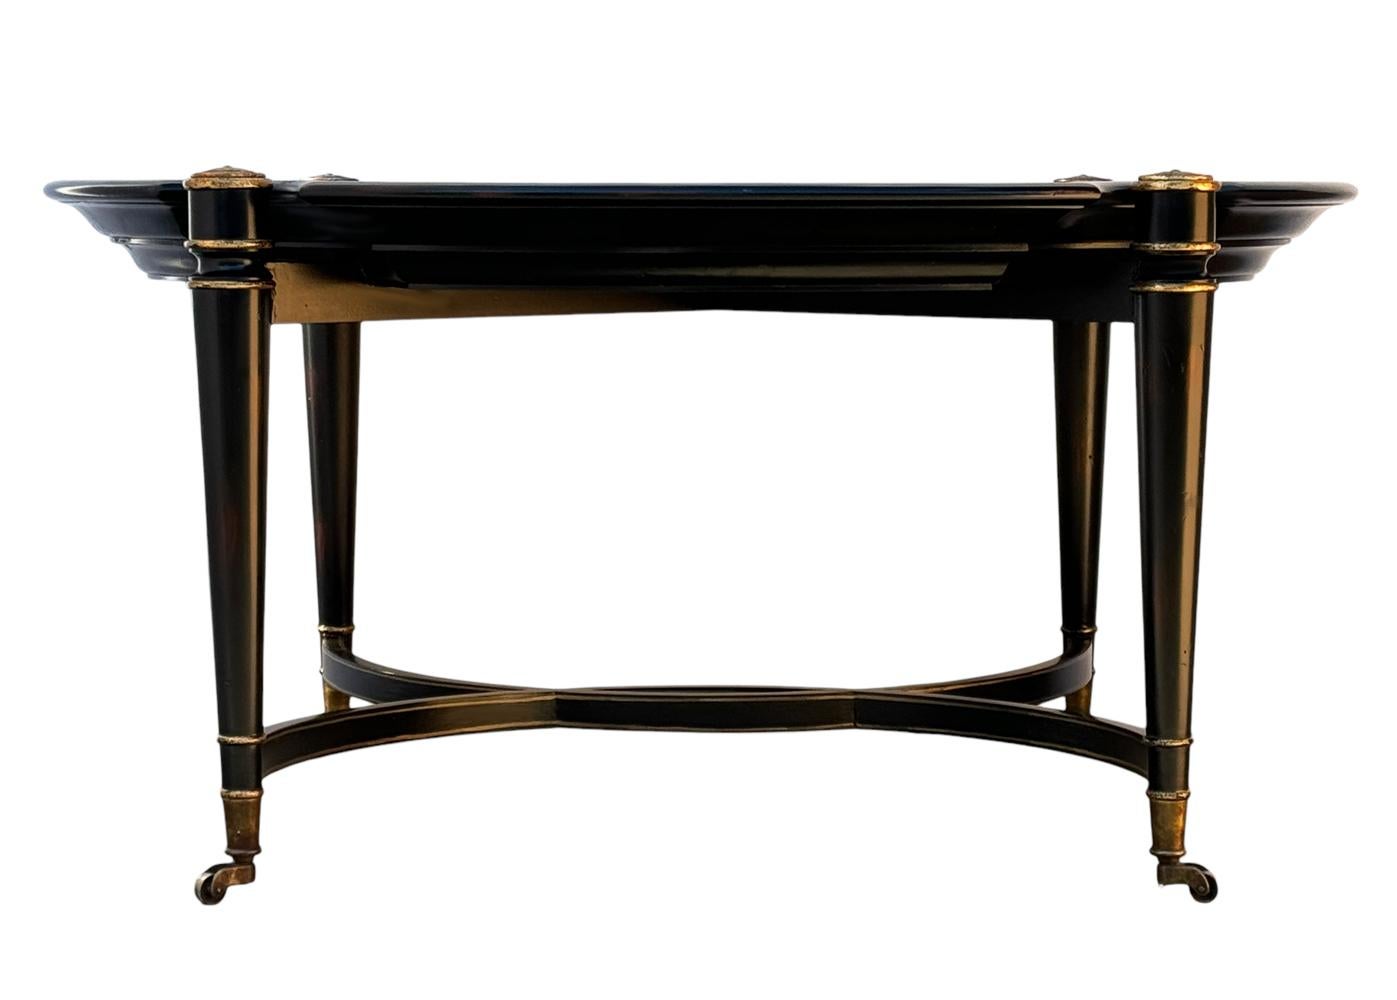 Une table basse classique et sophistiquée tout droit sortie des années 1980. Il présente un design regency émiré avec du bois de ronce et des garnitures dorées. 